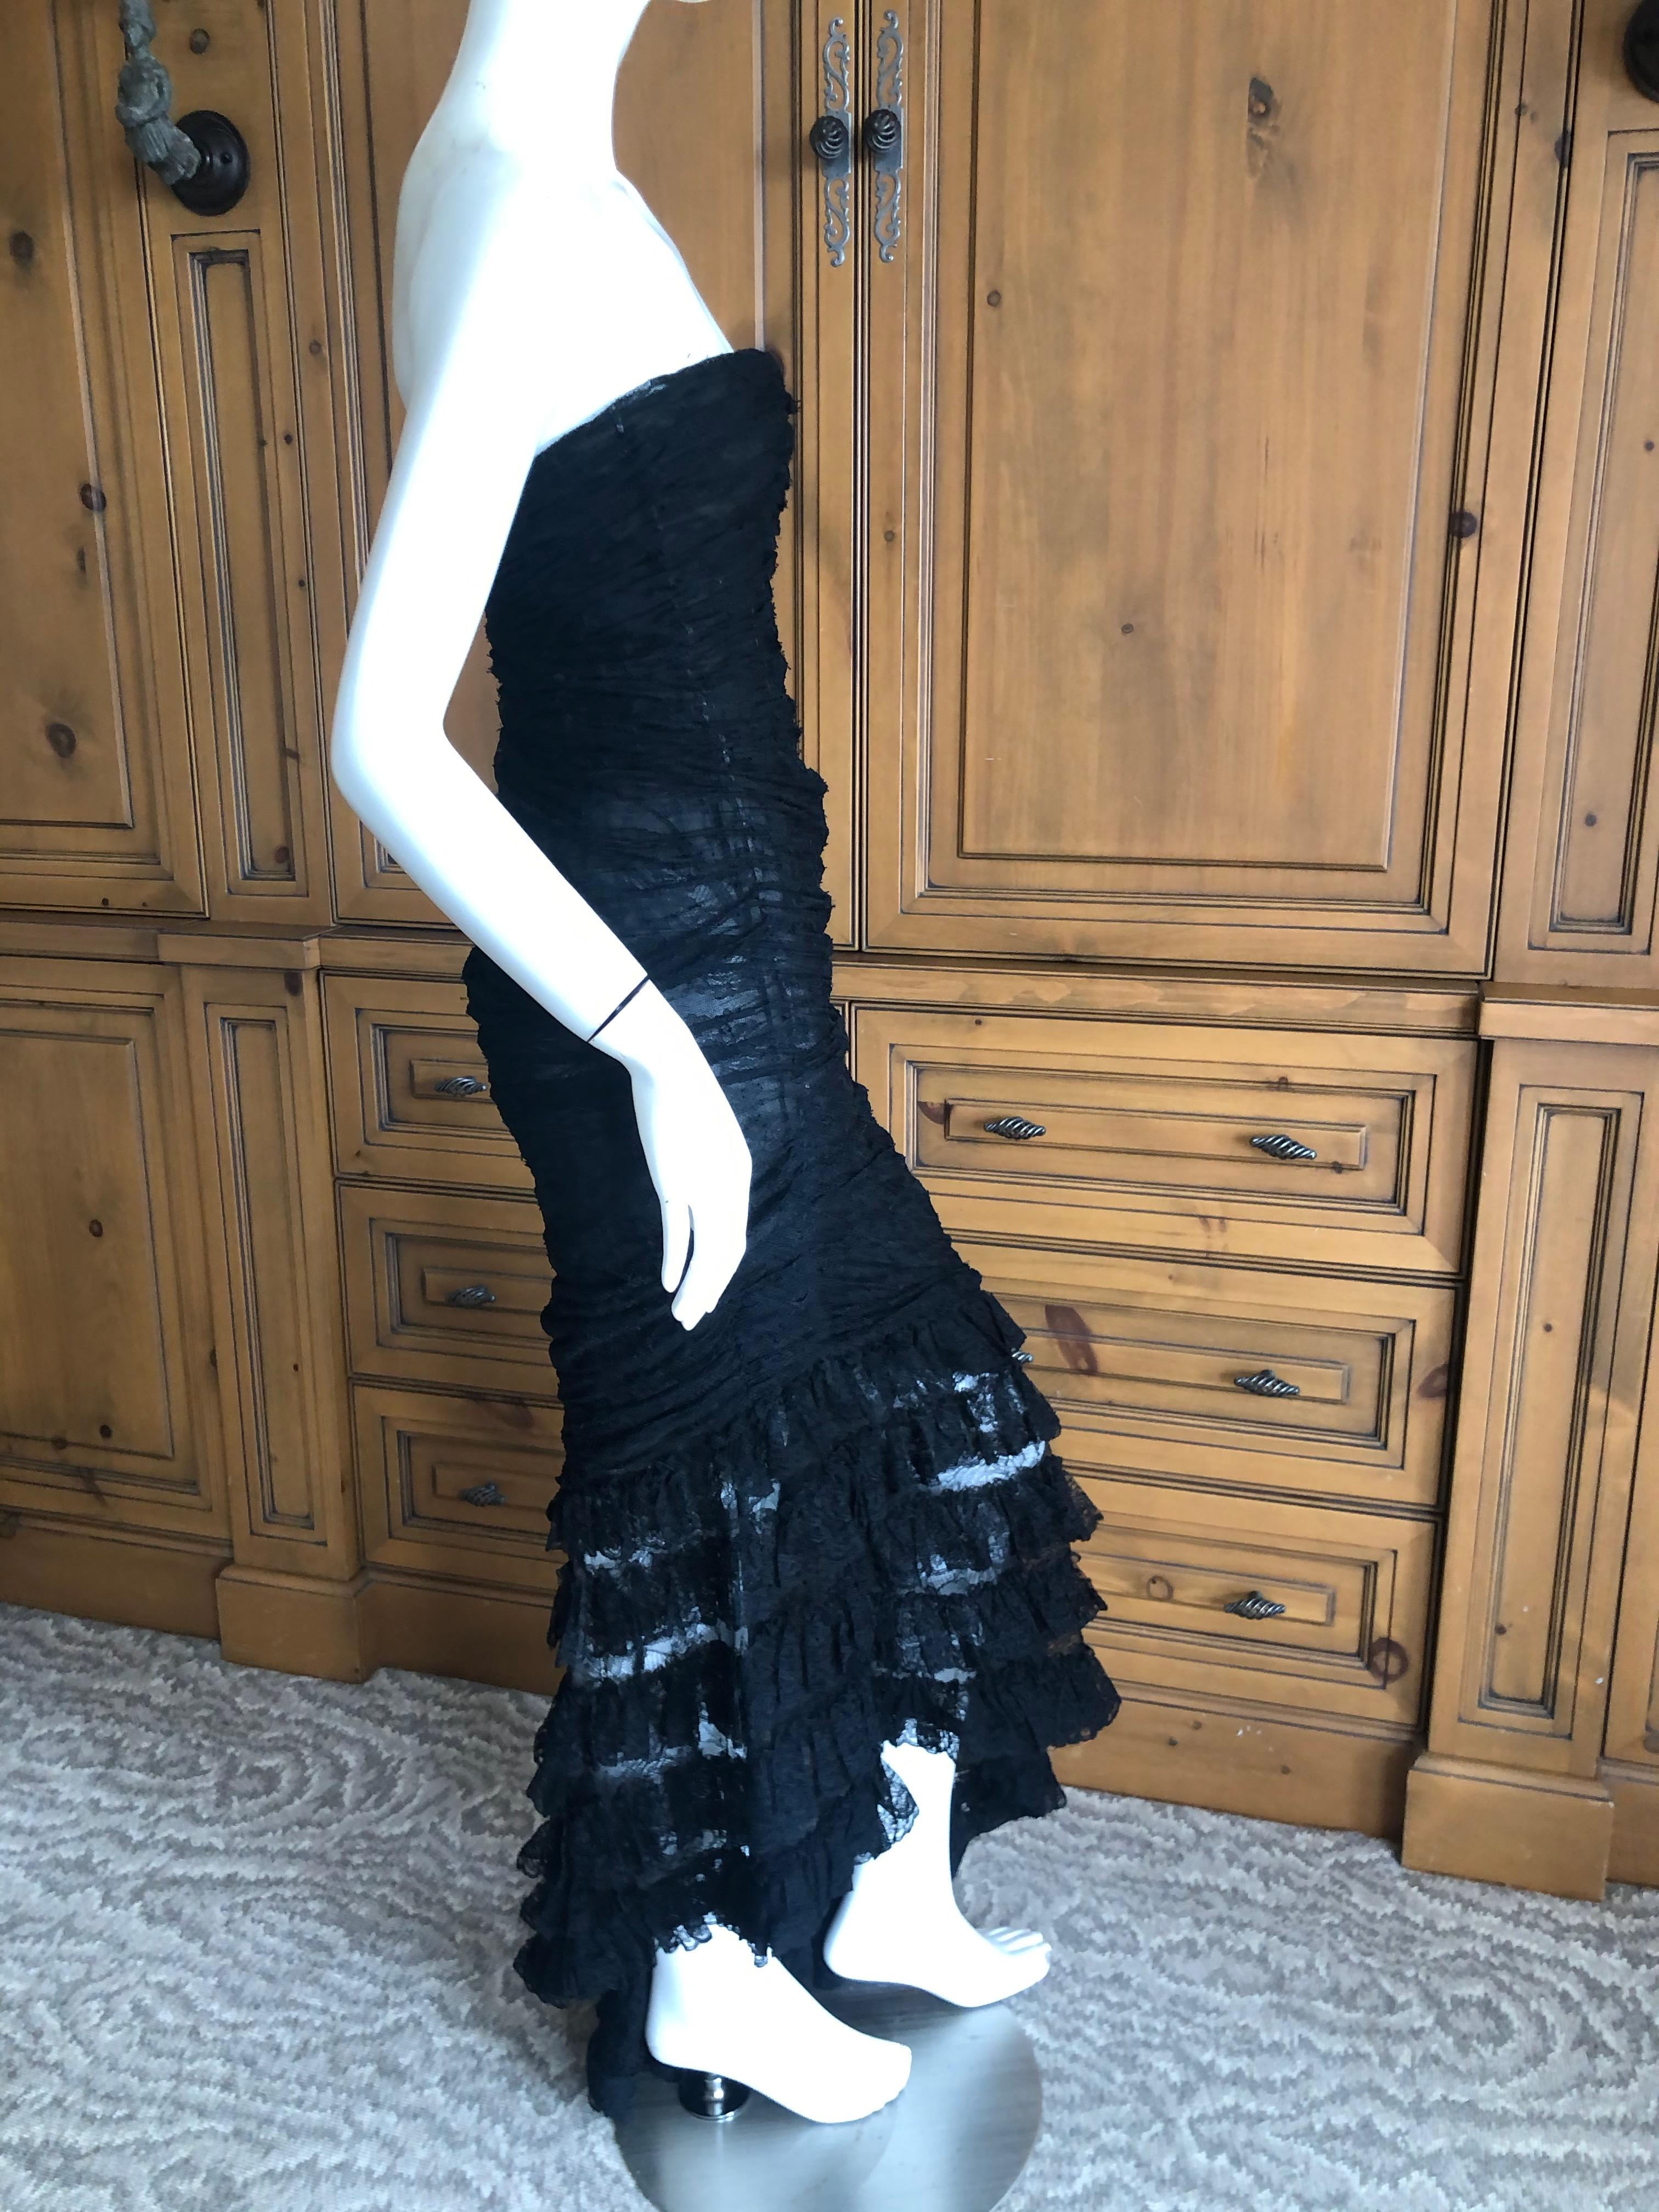  Oscar de la Renta Vintage 1980's Black Lace Evening Dress with Flamenco Ruffles For Sale 3